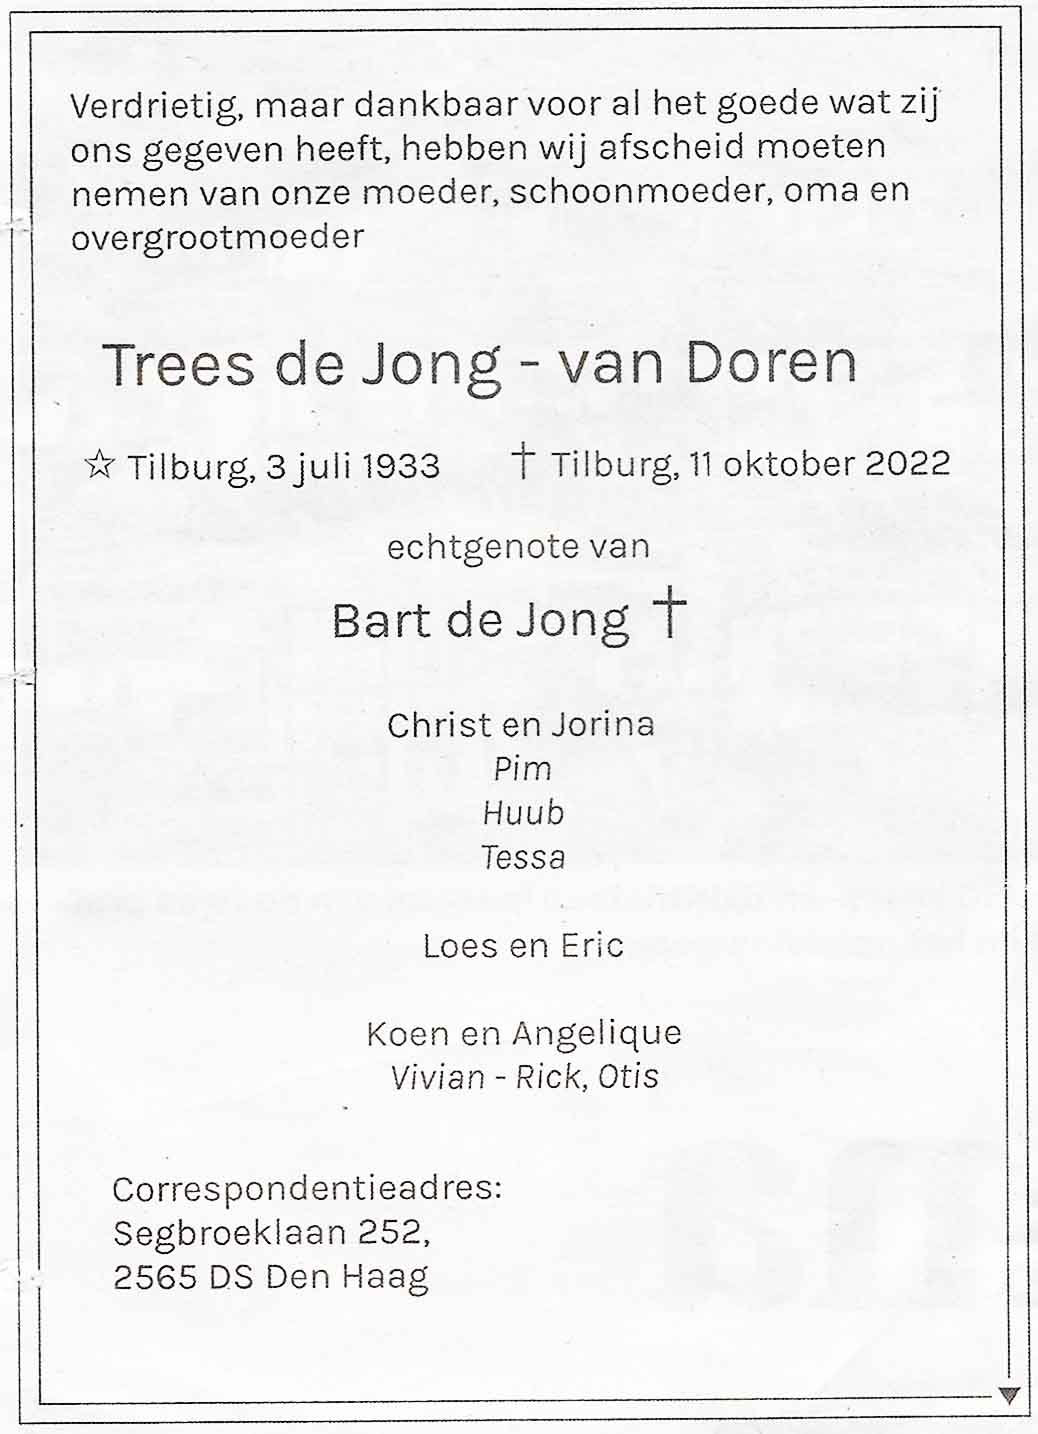 In memoriam mevrouw Trees de Jong- van Doren